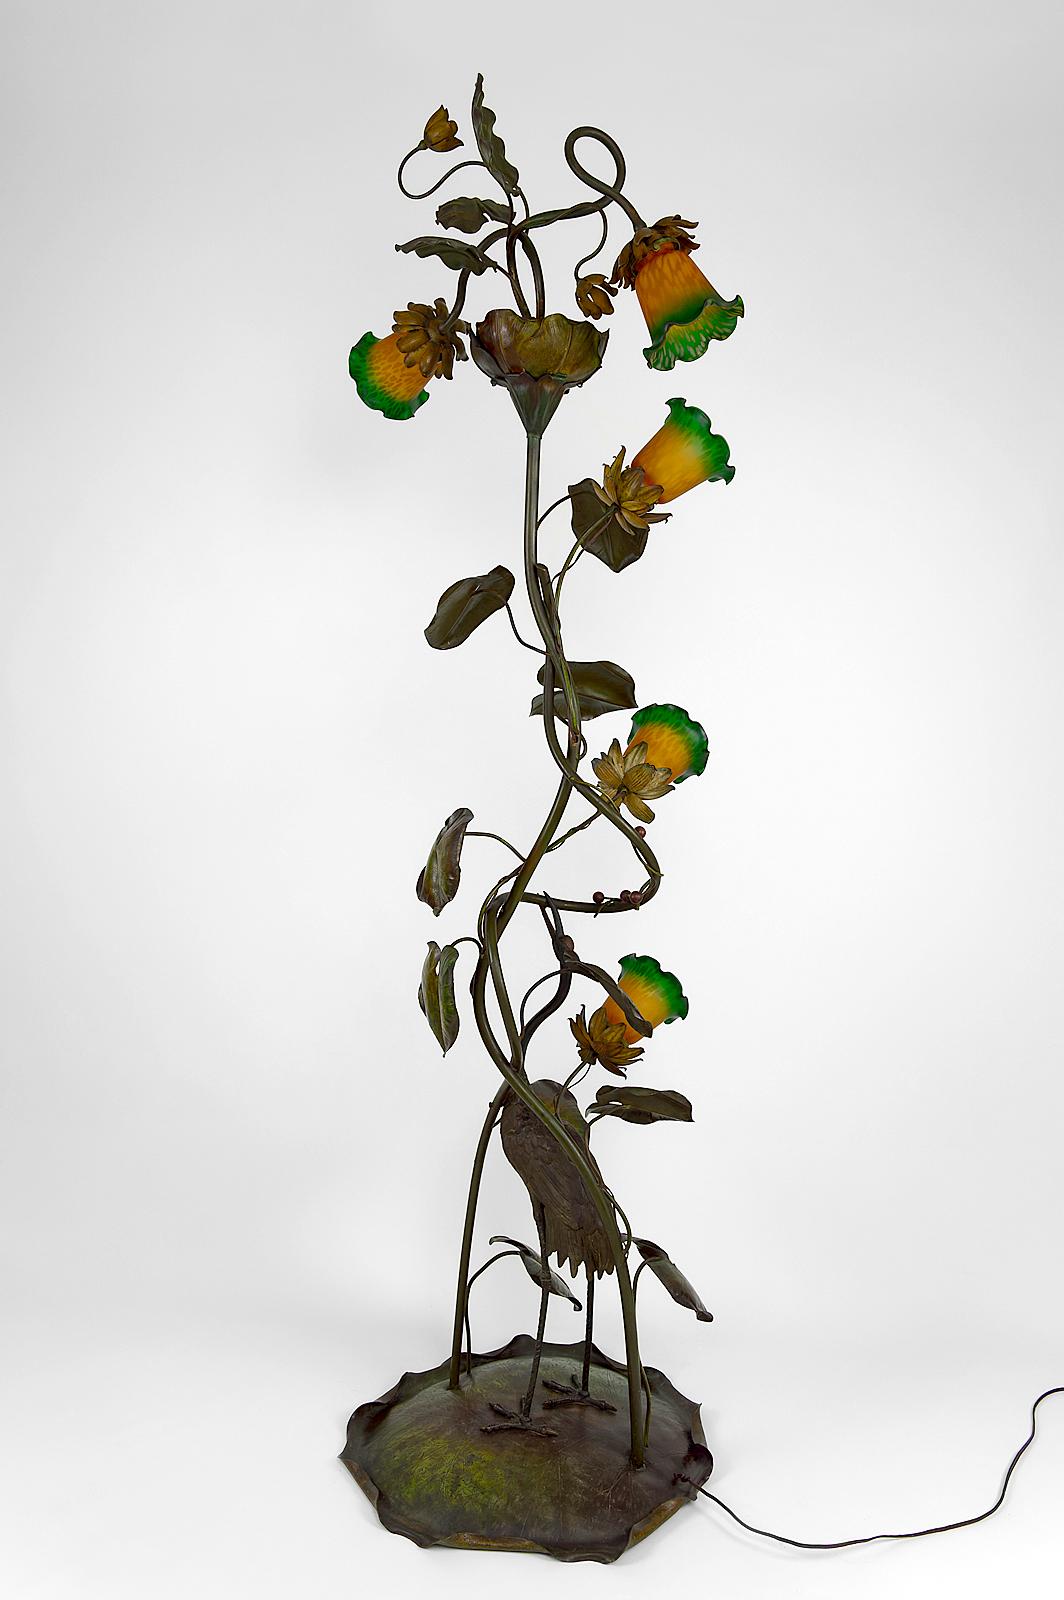 Une pièce exceptionnelle !

Superbe sculpture lampadaire en bronze et laiton patiné et peint, représentant une grue japonaise (tsuru) / héron / échassier cueillant des baies rouges au milieu d'une nature luxuriante (fleurs, feuilles de nénuphar).

5